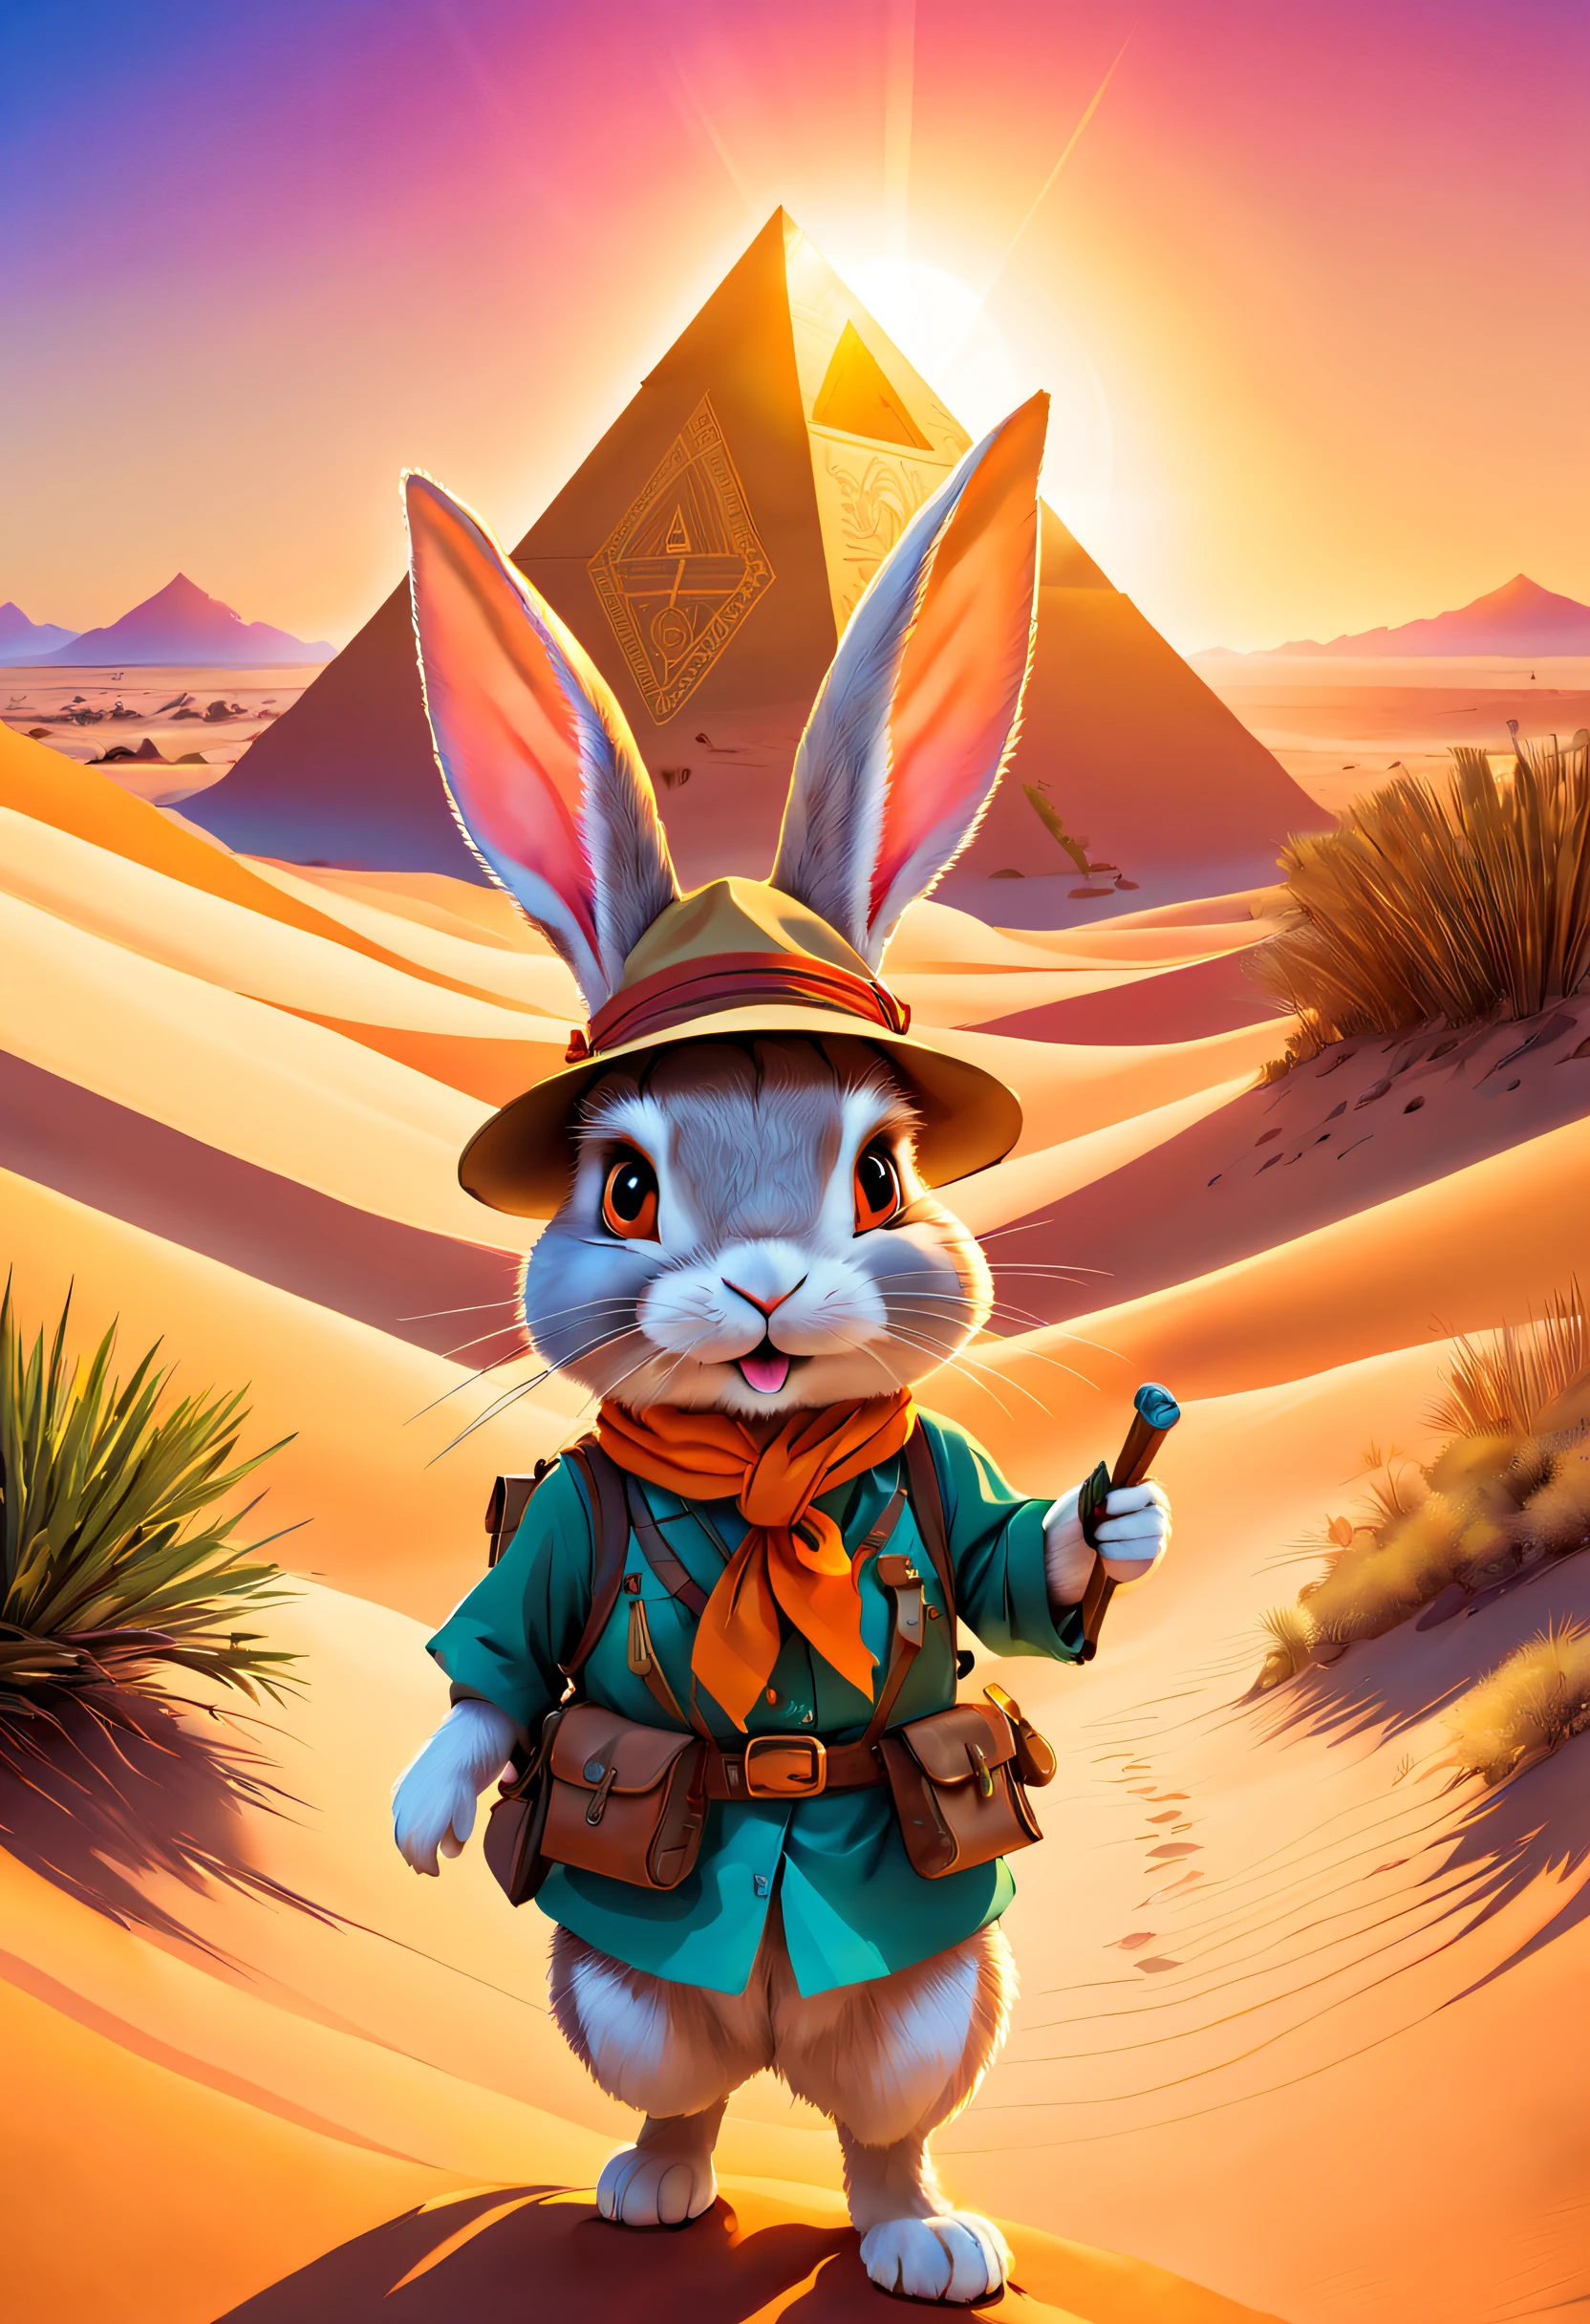 在廣闊的沙漠裡, 一隻小兔子興奮地踏上了冒險之旅. 穿上特製的探險家服裝. 這套衣服還有小口袋，可攜帶必要的工具和食物, 頭戴寬邊草帽，上面繫著一條亮麗的絲巾, 戴著時髦的橘色太陽眼鏡後，眼睛閃爍著好奇的光芒, 在她手裡, ((兔子拿著一張舊地圖))，上面標示了沙漠金字塔的位置. 穿越沙丘和沙漠植被, 一步一步來, 你將能夠到達目的地. 高聳的建築是用金沙築成的，在陽光下閃閃發光. 它的表面雕刻著神秘的符號和圖案, 夕陽在金字塔上投射出溫暖的光芒, 小兔子開始爬上金字塔陡峭的表面. 她仔細尋找每一個立足點和突出的石頭，確保她的安全. 當她終於到達山頂時, 她被壯觀的沙漠景色所震撼. 從金字塔的頂端, 露露可以看到一望無際的沙漠一直延伸到遠方. 陽光照亮了金色的沙丘, 派對動物風格, (吉卜力風格的色彩, 電影燈光, 第一人稱視角, 視角, 全景, 超廣角, 超高畫質, 解剖學正確, 傑作, 準確, 得獎, 最好的品質)，動物風格, 打扮的動物頁面